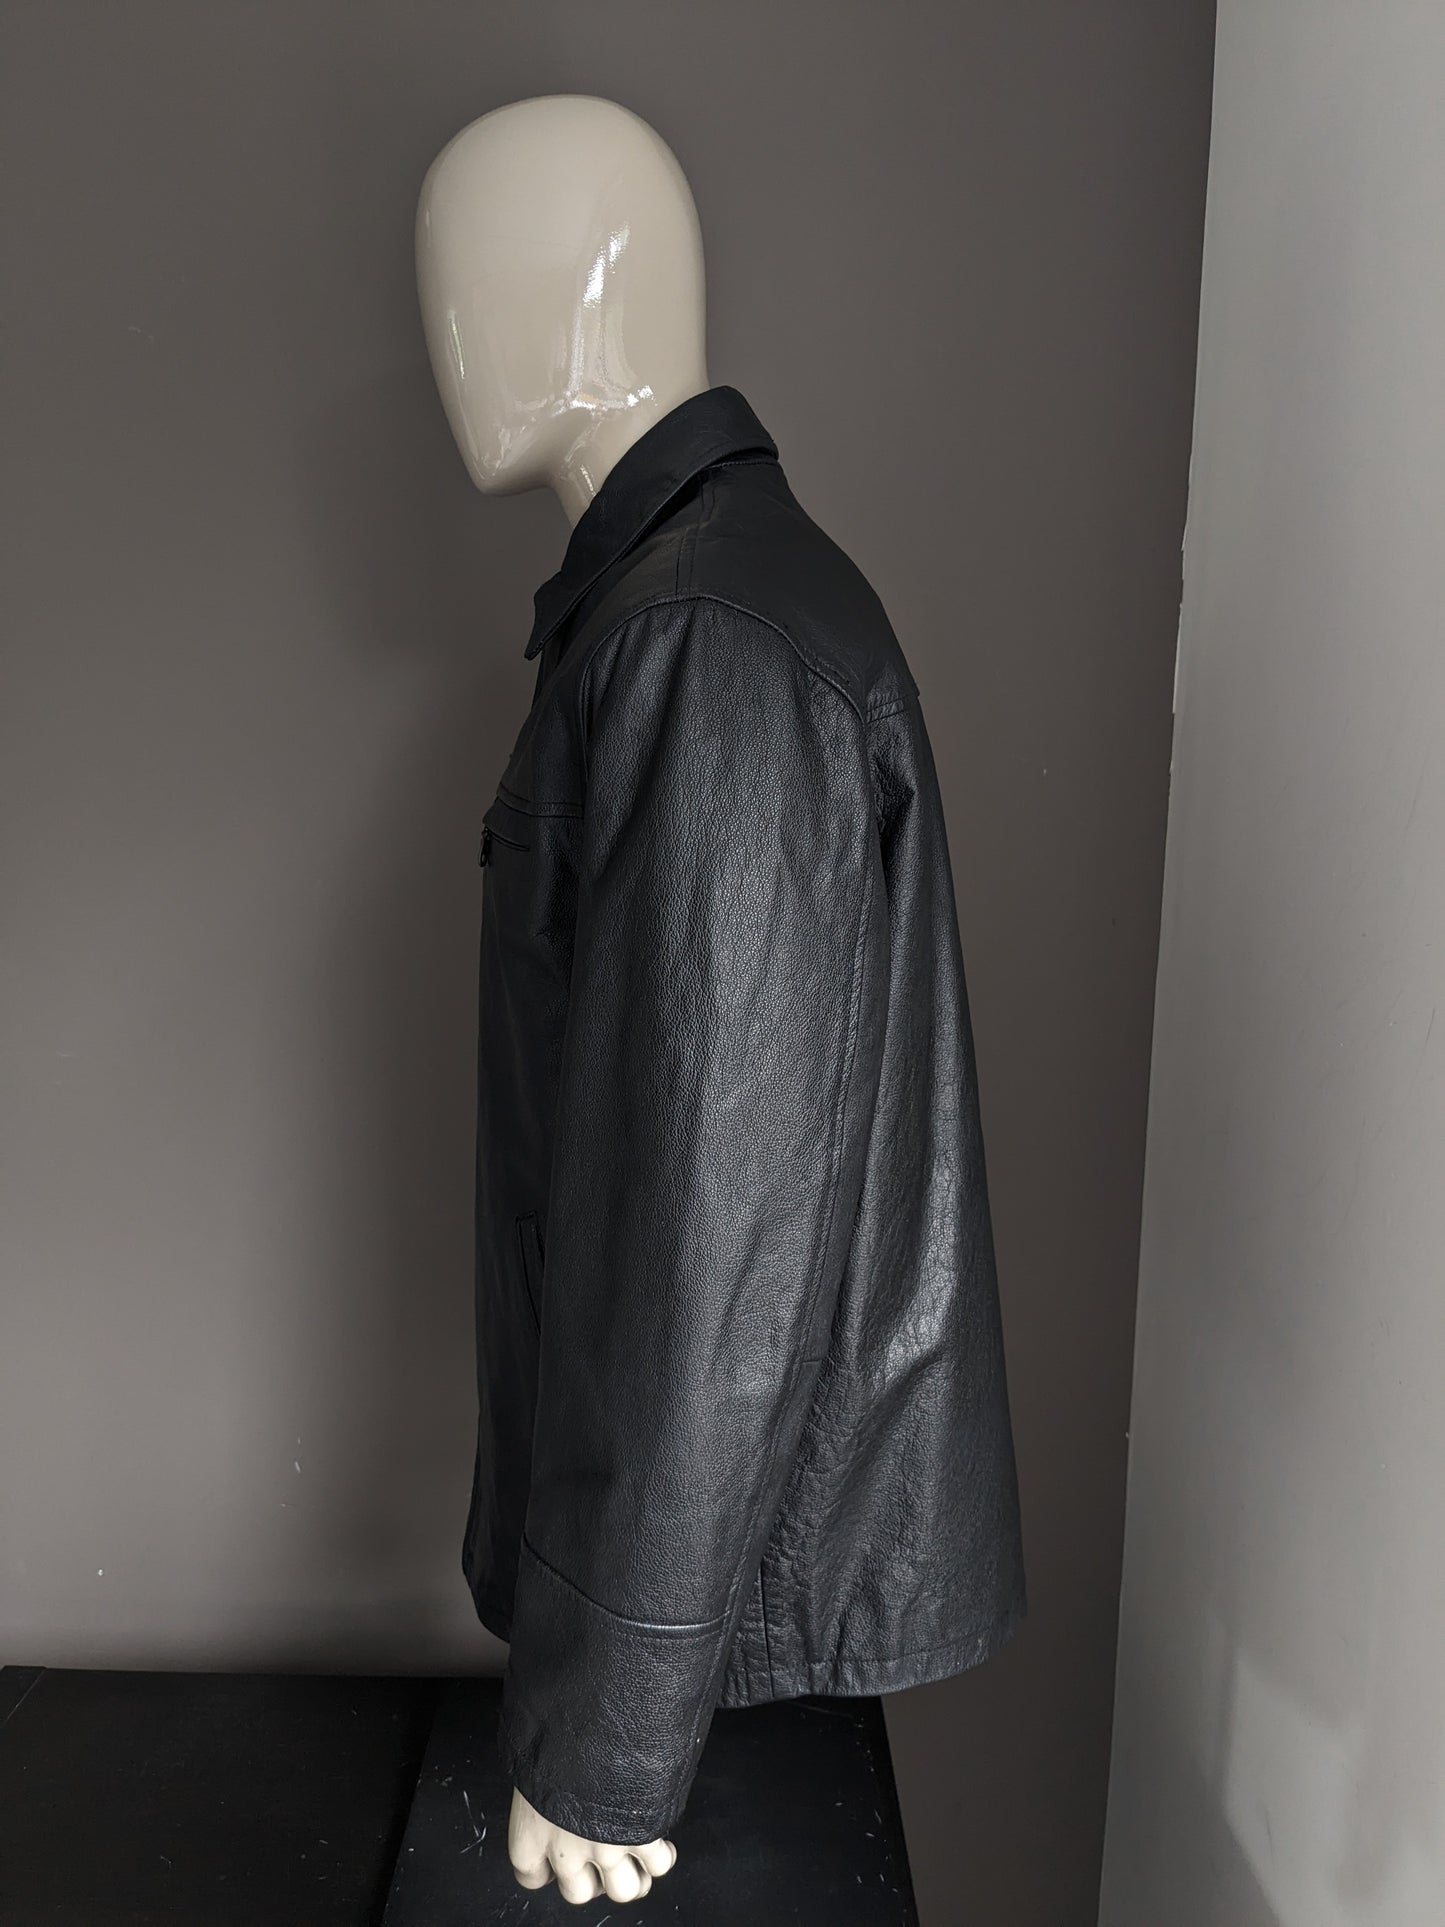 Revolution leather jacket / jacket. Black colored. Size L.